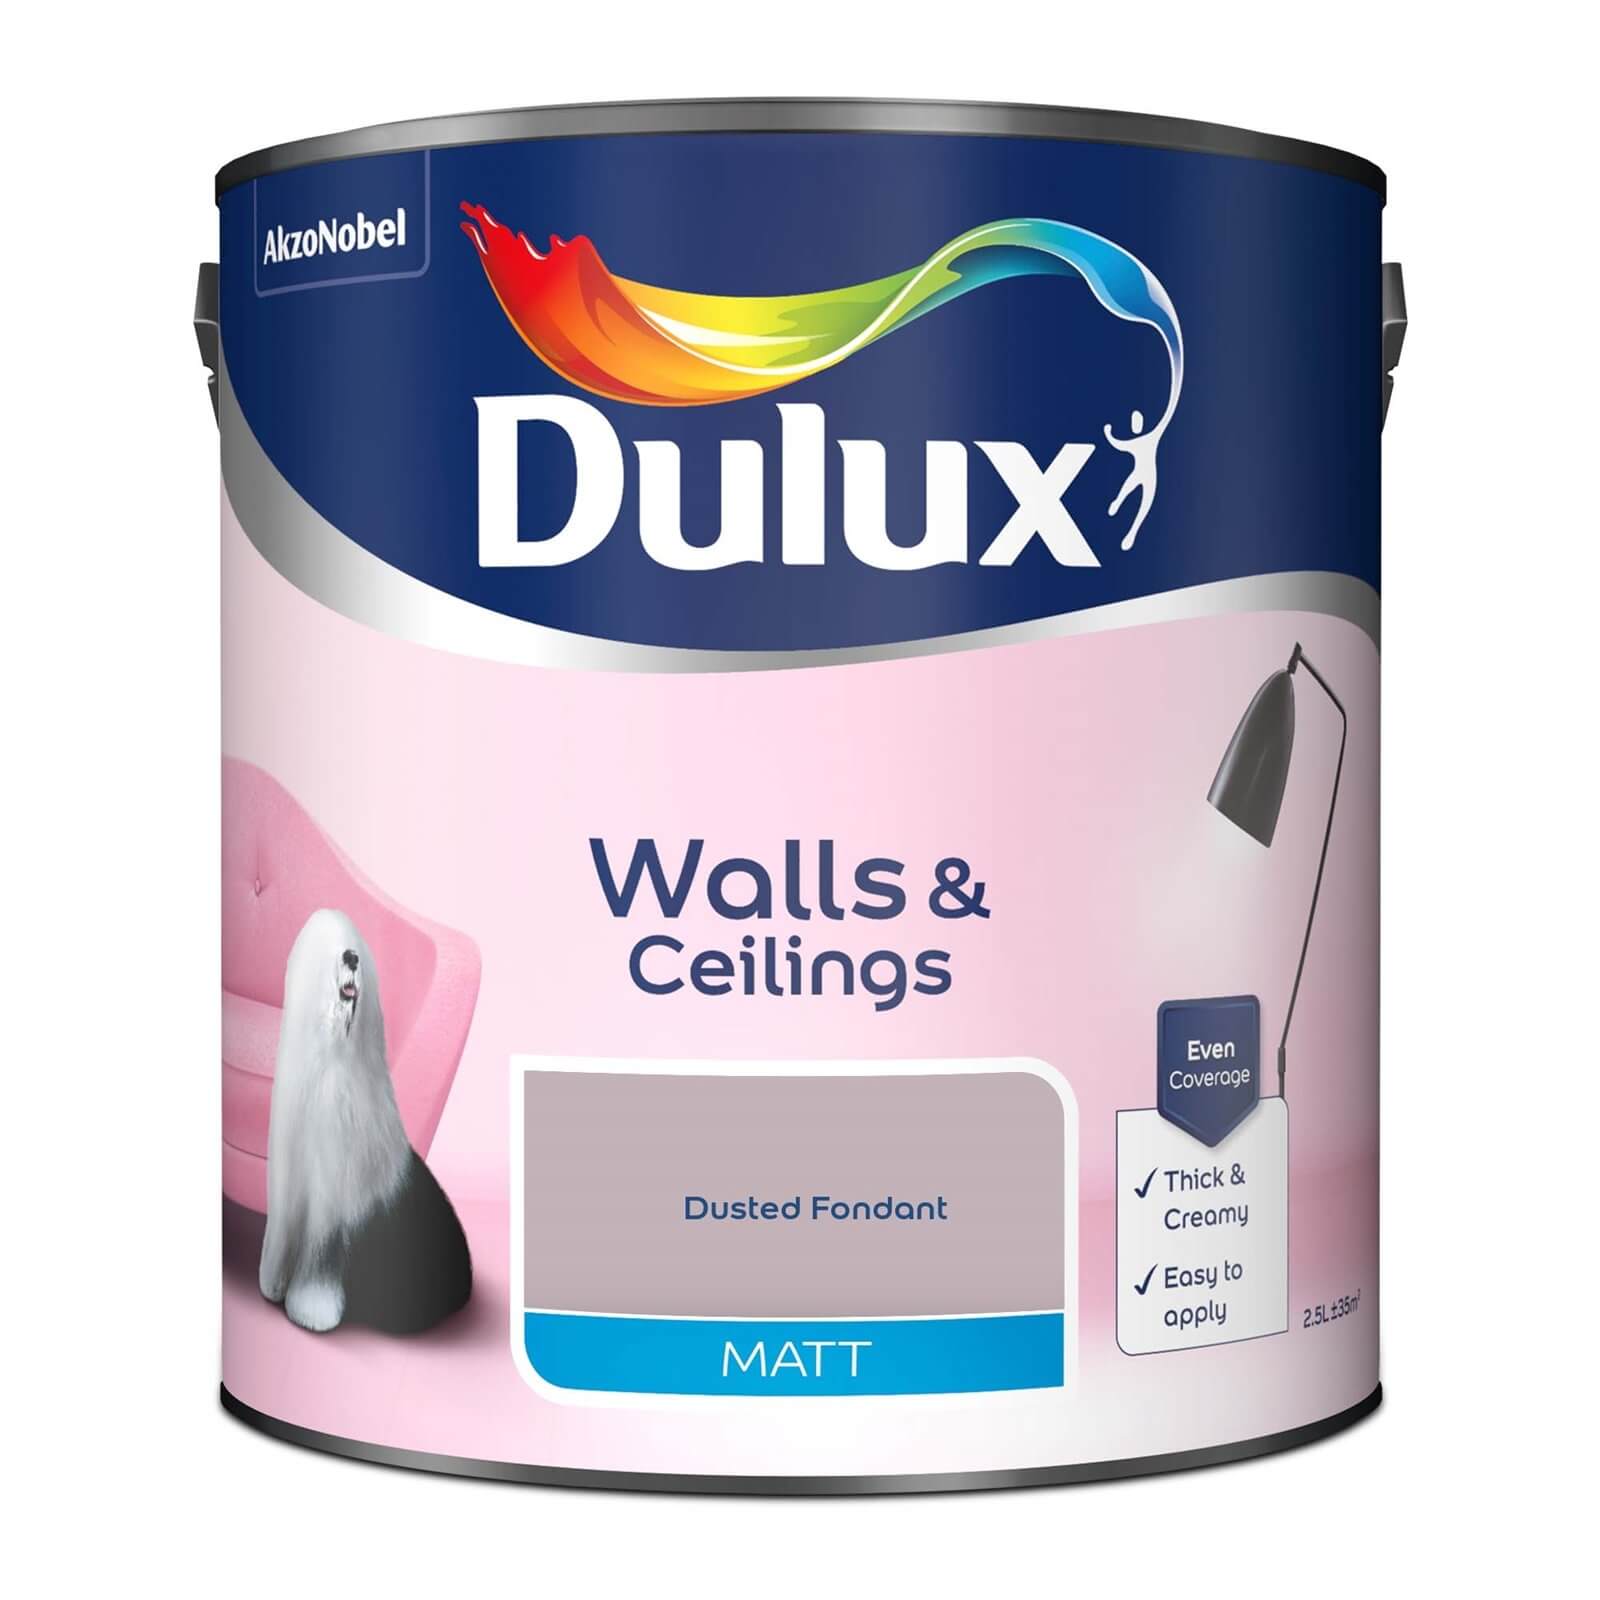 Dulux Matt Emulsion Paint Dusted Fondant - 2.5L